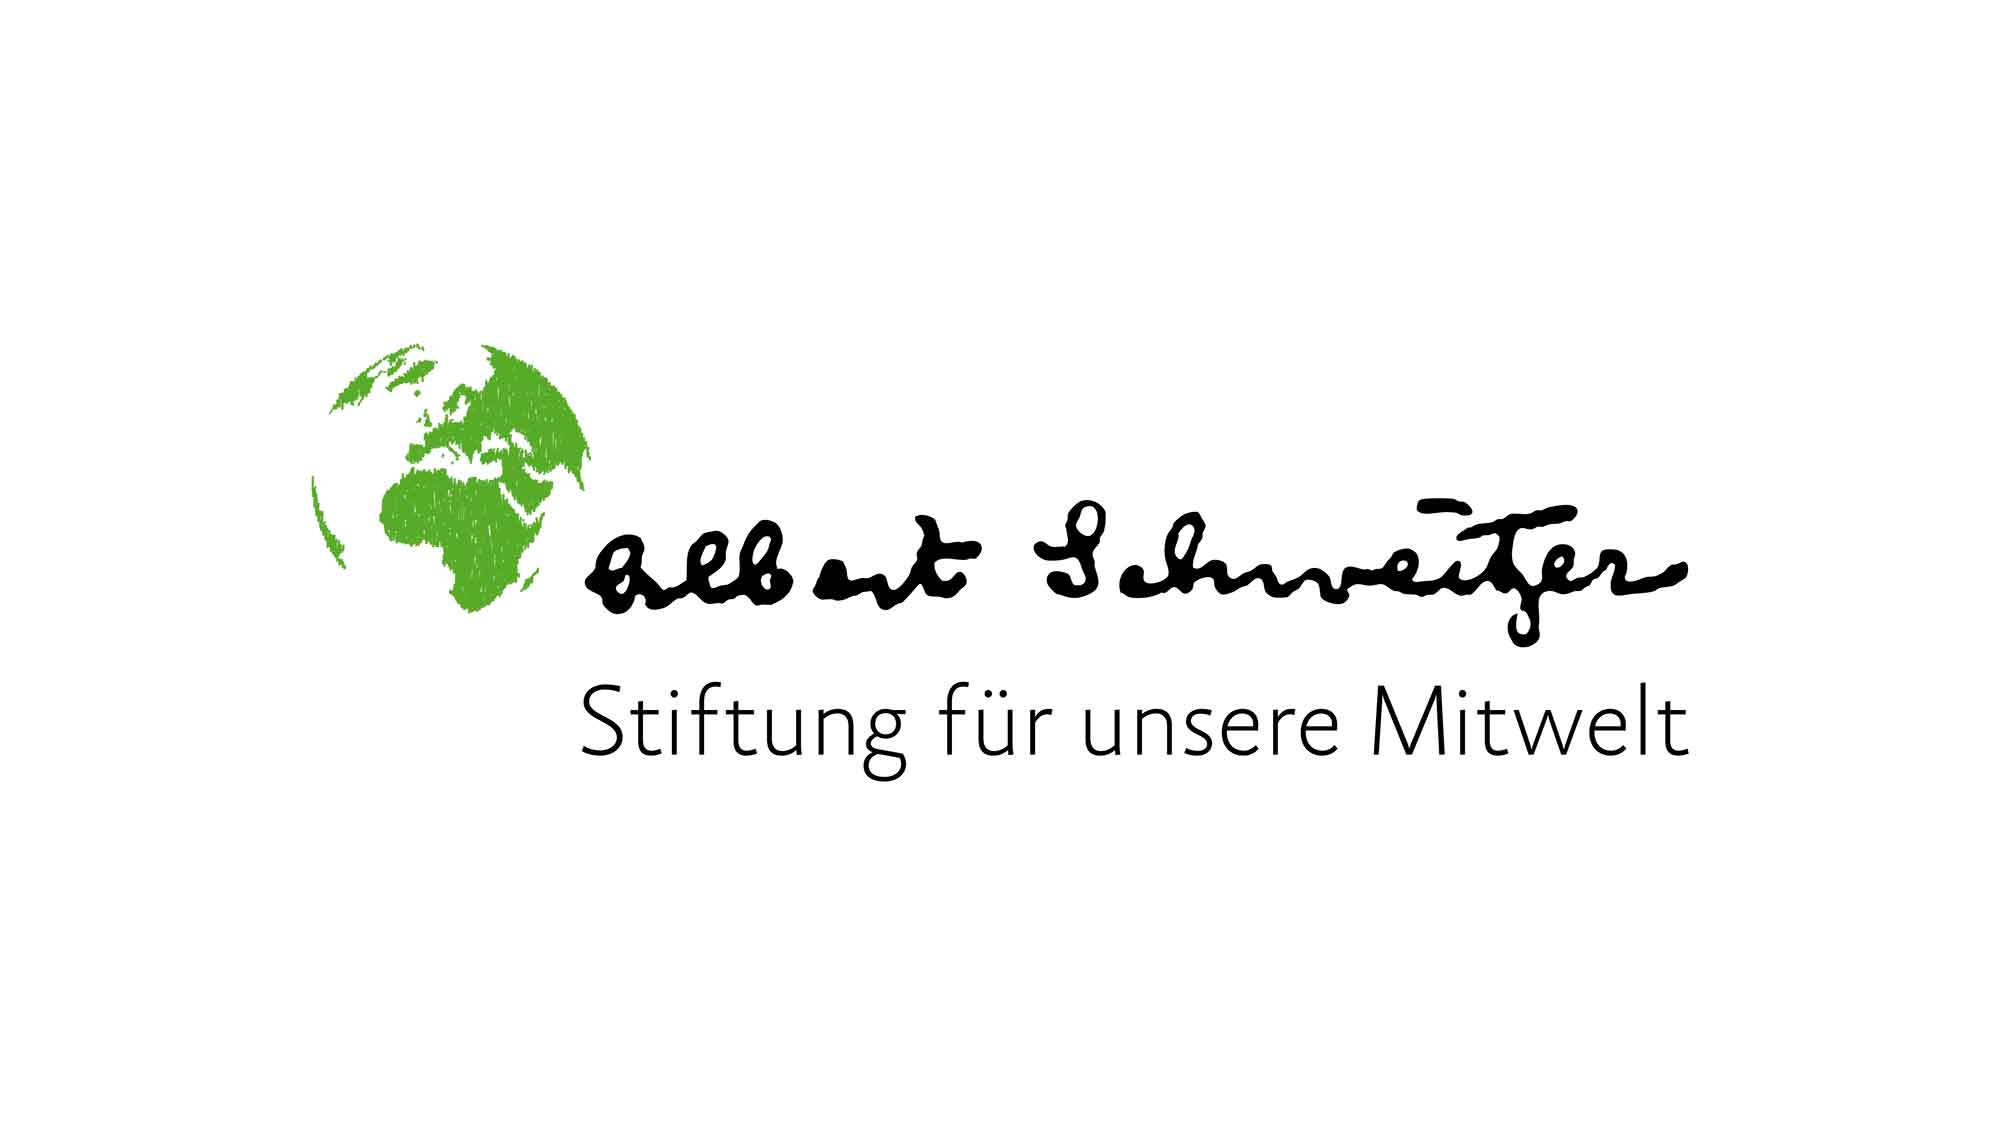 Albert Schweitzer Stiftung für unsere Mitwelt, Welttierschutztag: Neue Undercover Videos – Lidl muss endlich handeln